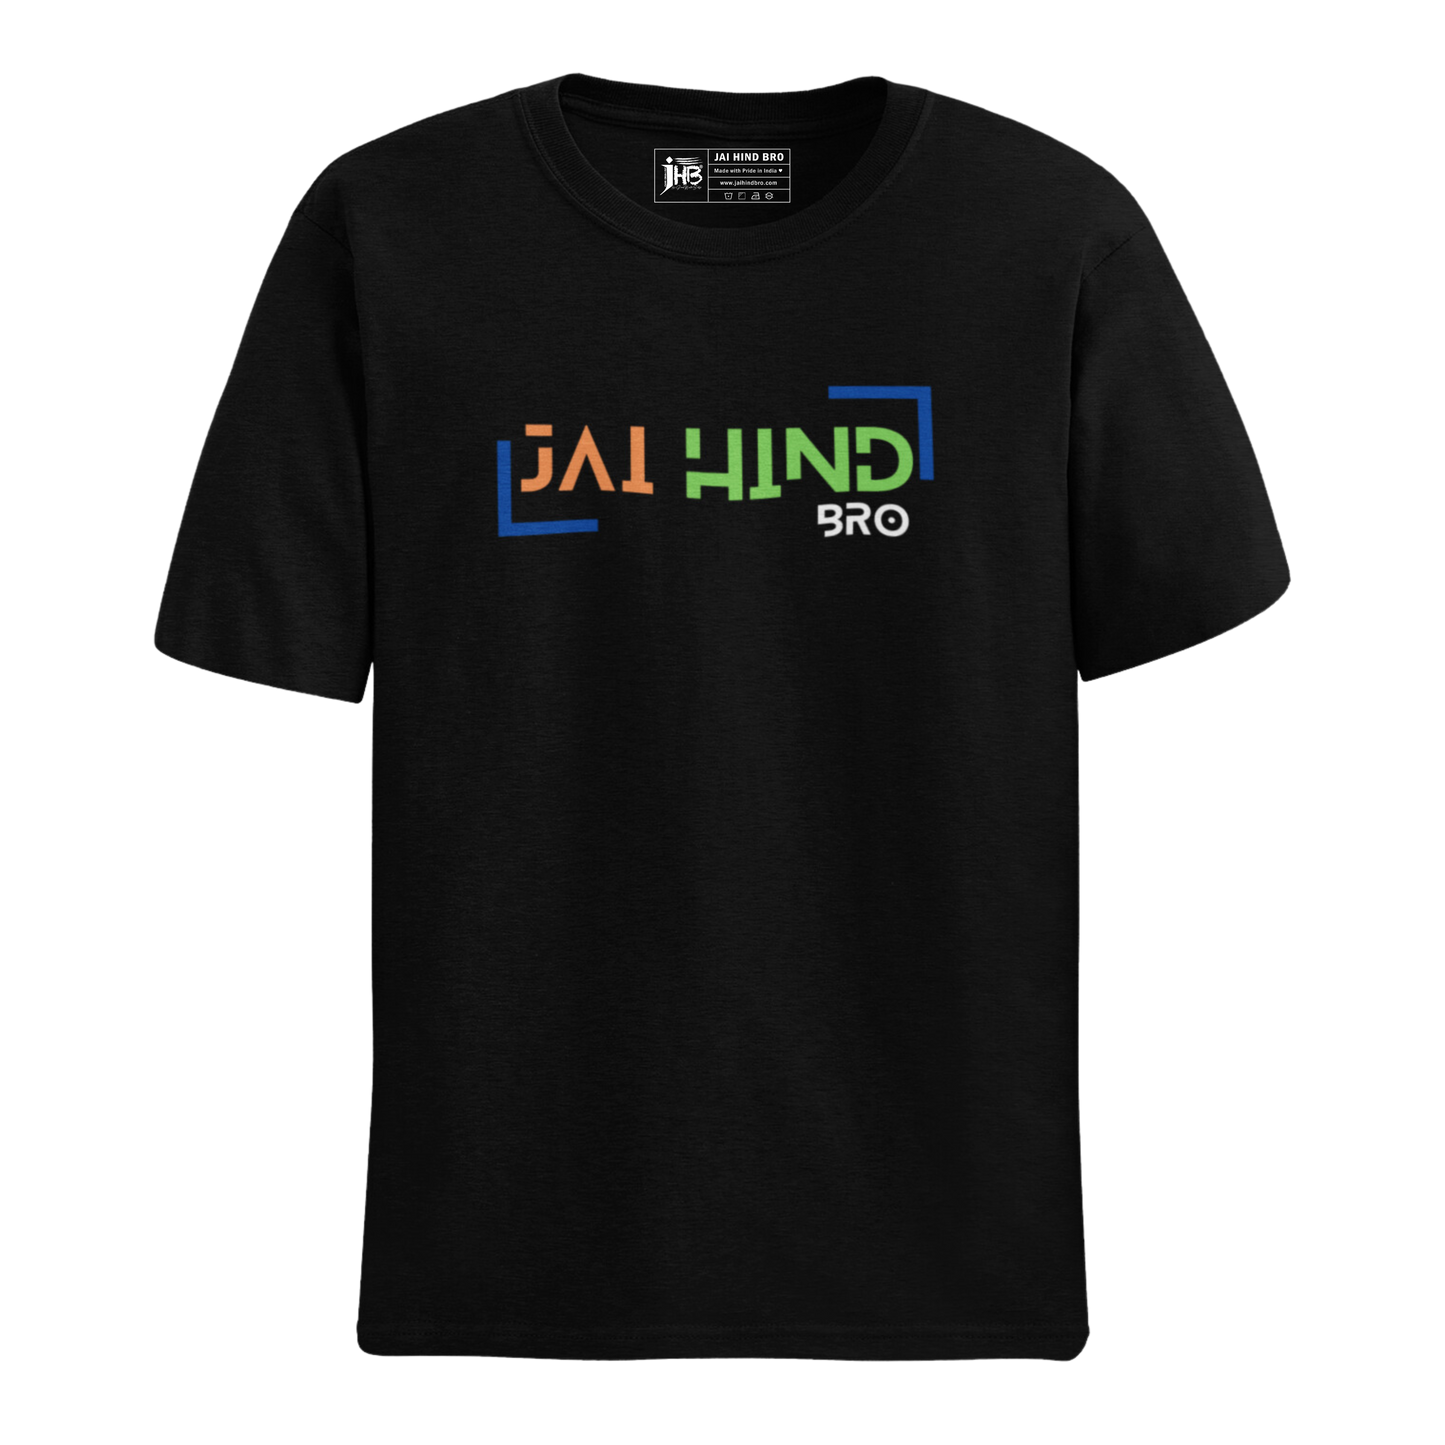 JAI HIND BRO  T-SHIRT BLACK